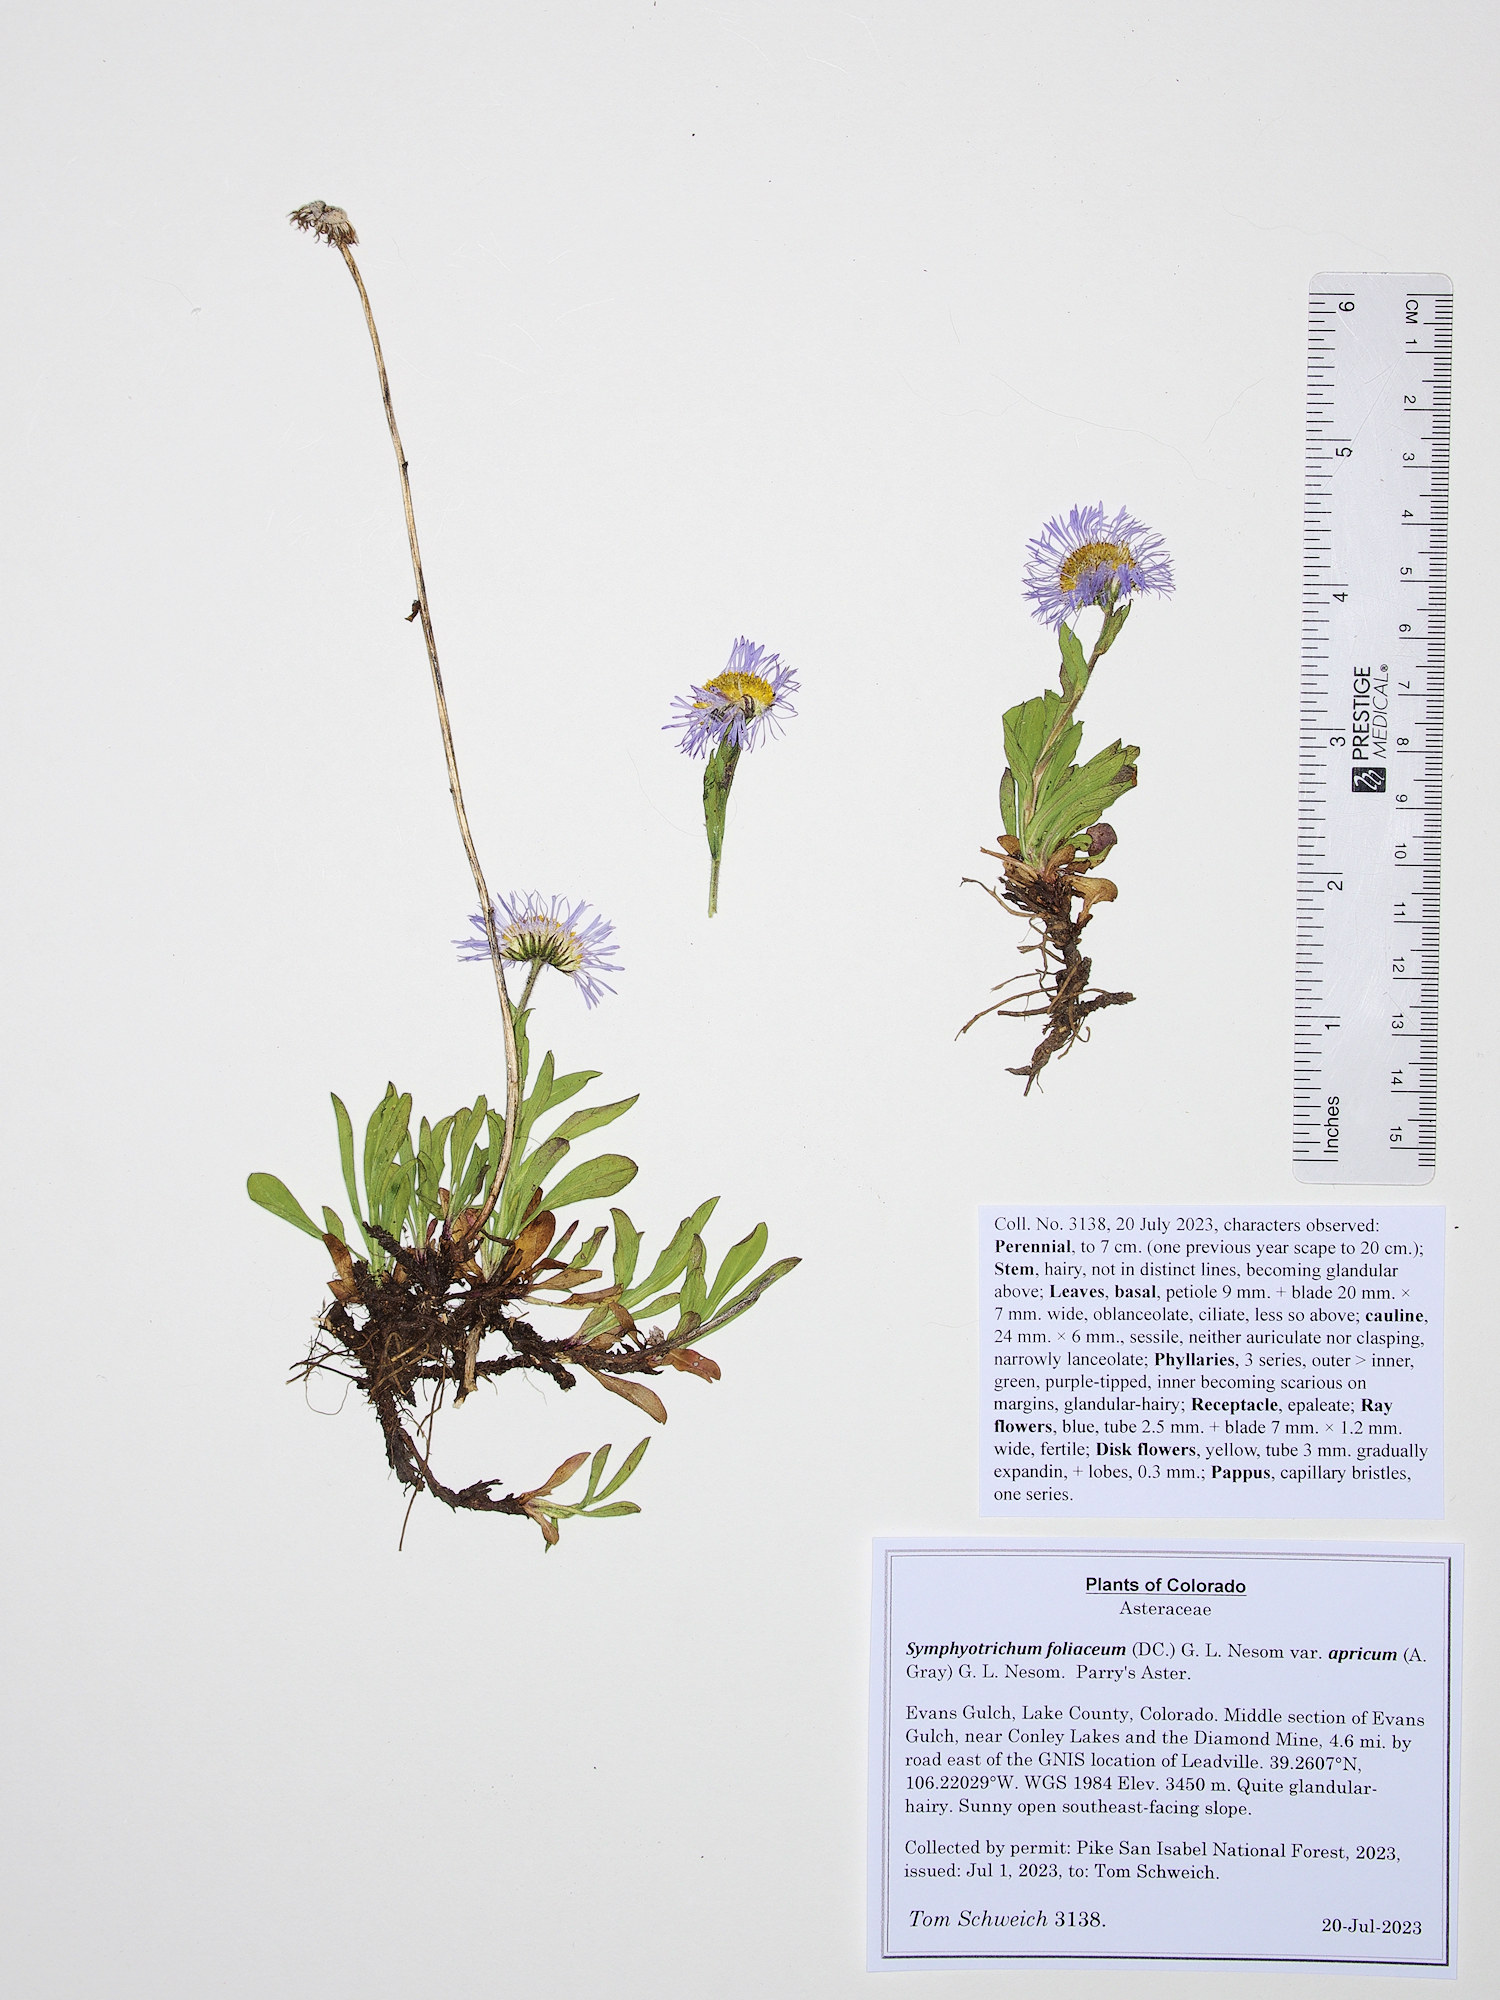 Asteraceae Symphyotrichum foliaceum apricum